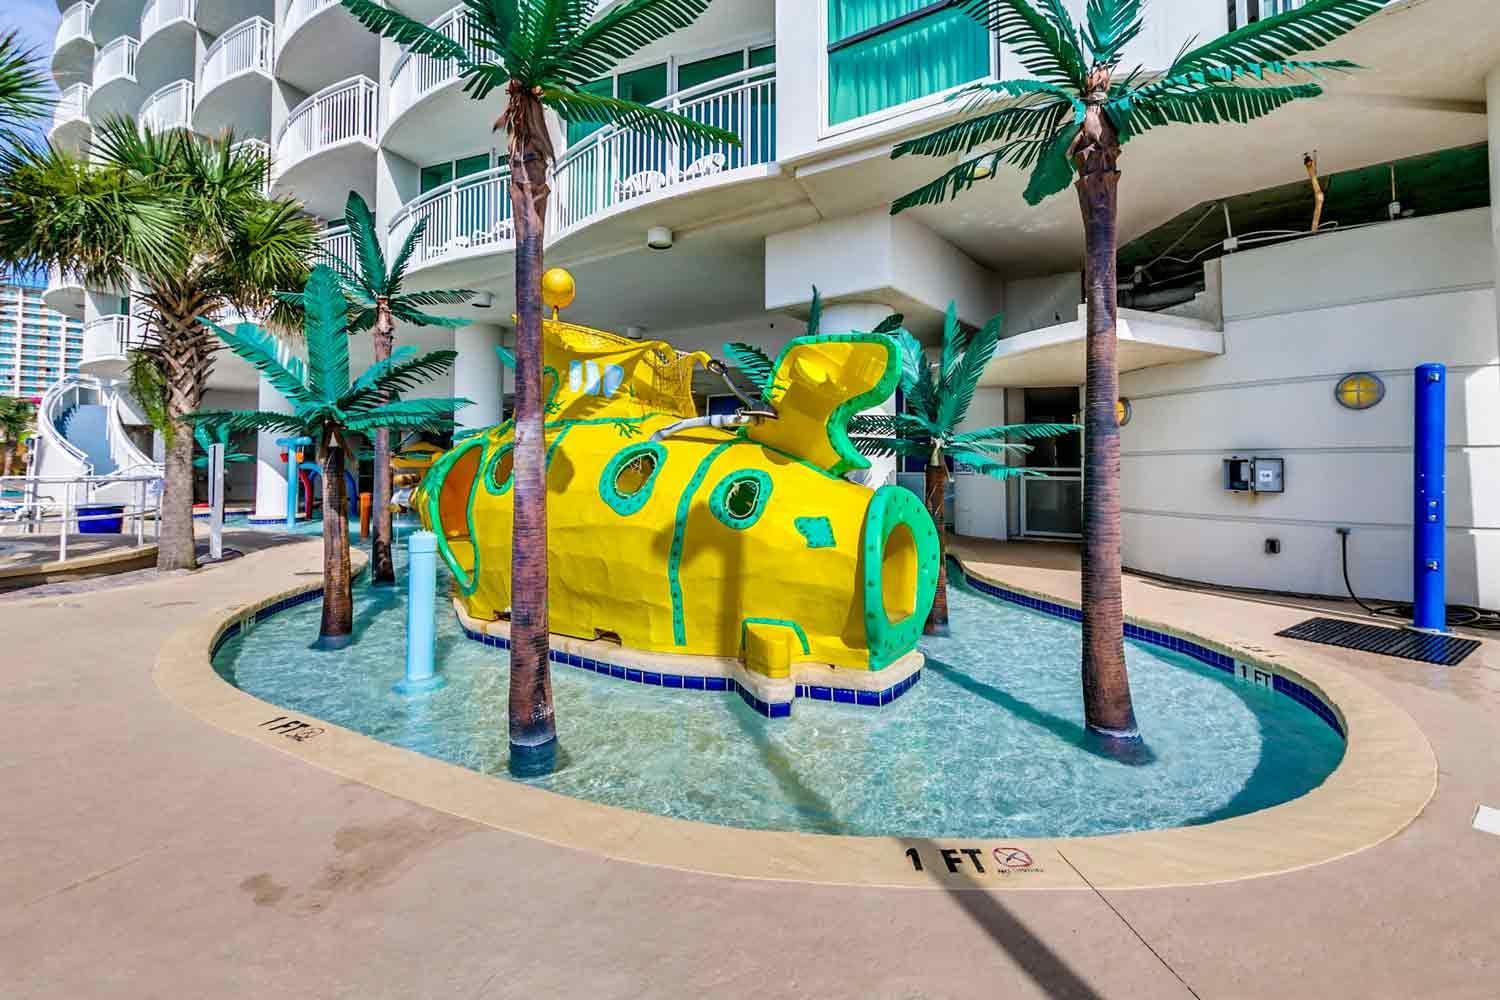 Sandy Beach Resort - 3 Bedroom Oceanfront Penthouse - Magnolia